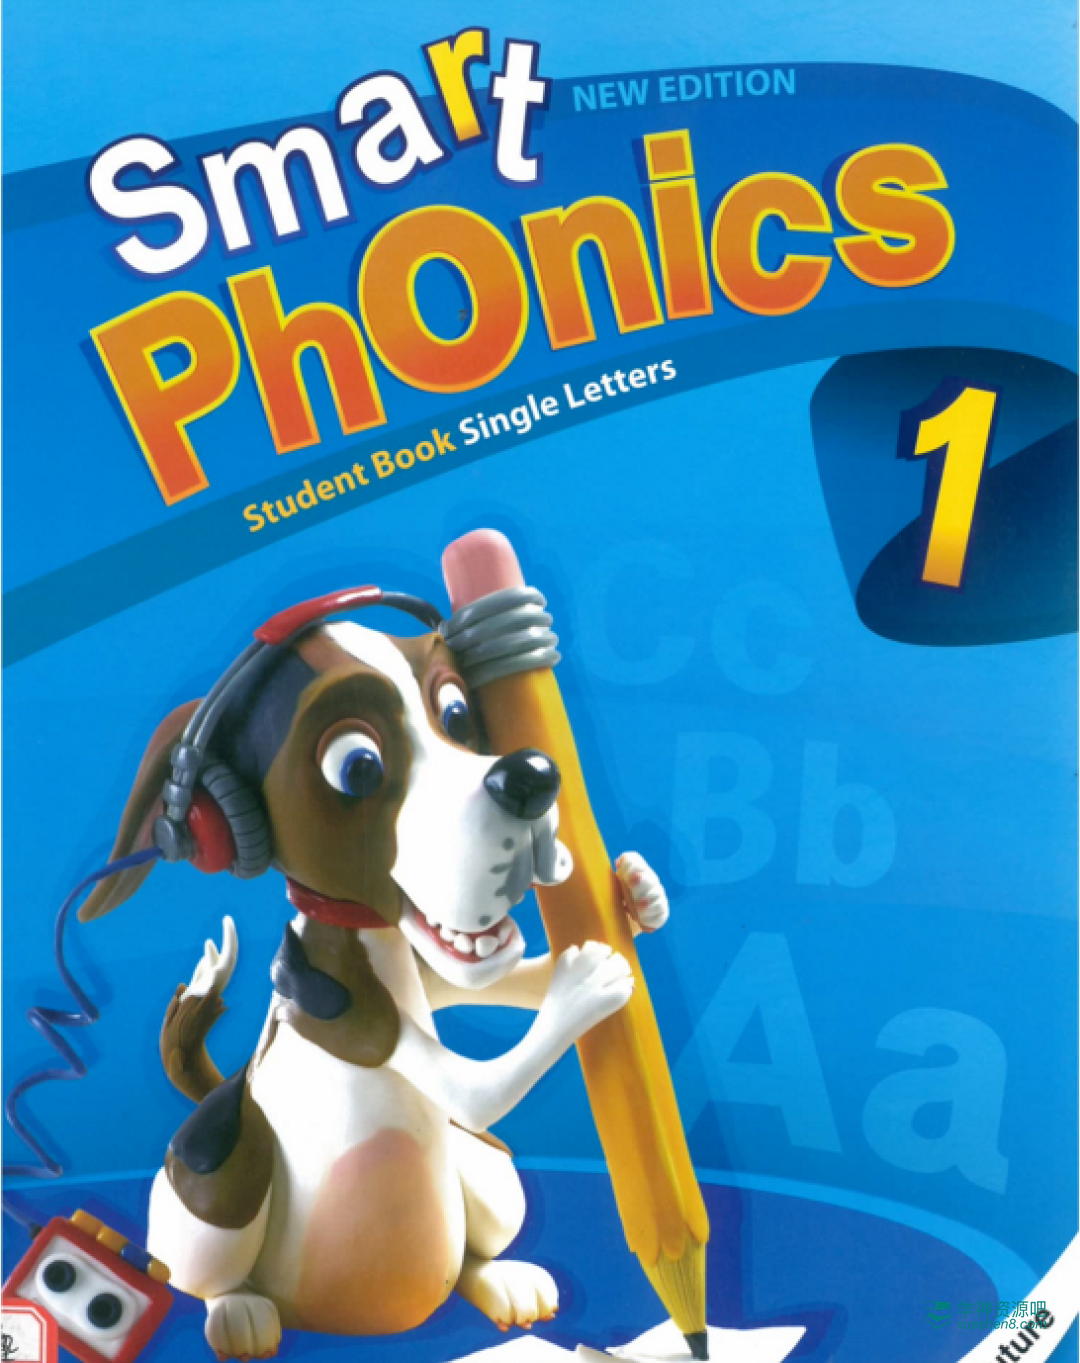 自然拼读教材Smart Phonics（学生软件 学生用书 老师资源 音频 练习册）